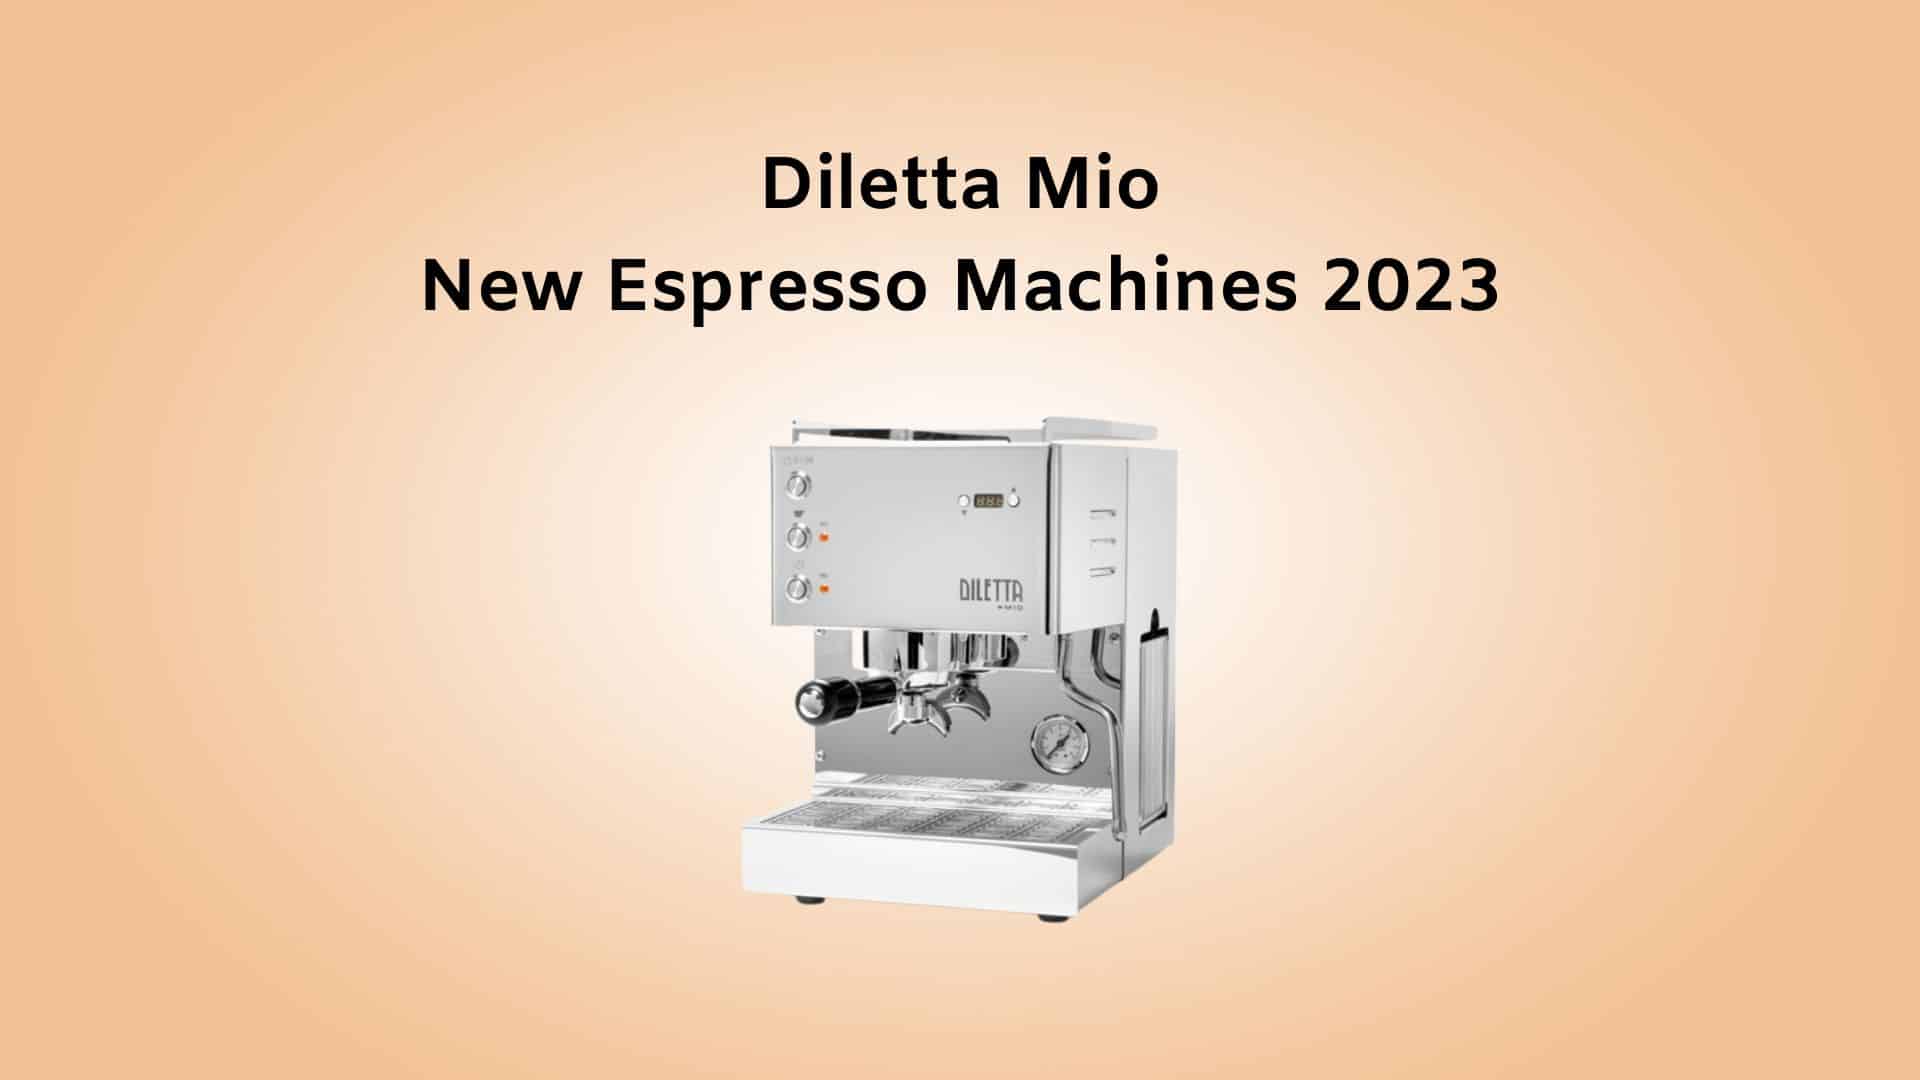 Diletta Mio New Espresso Machines 2023